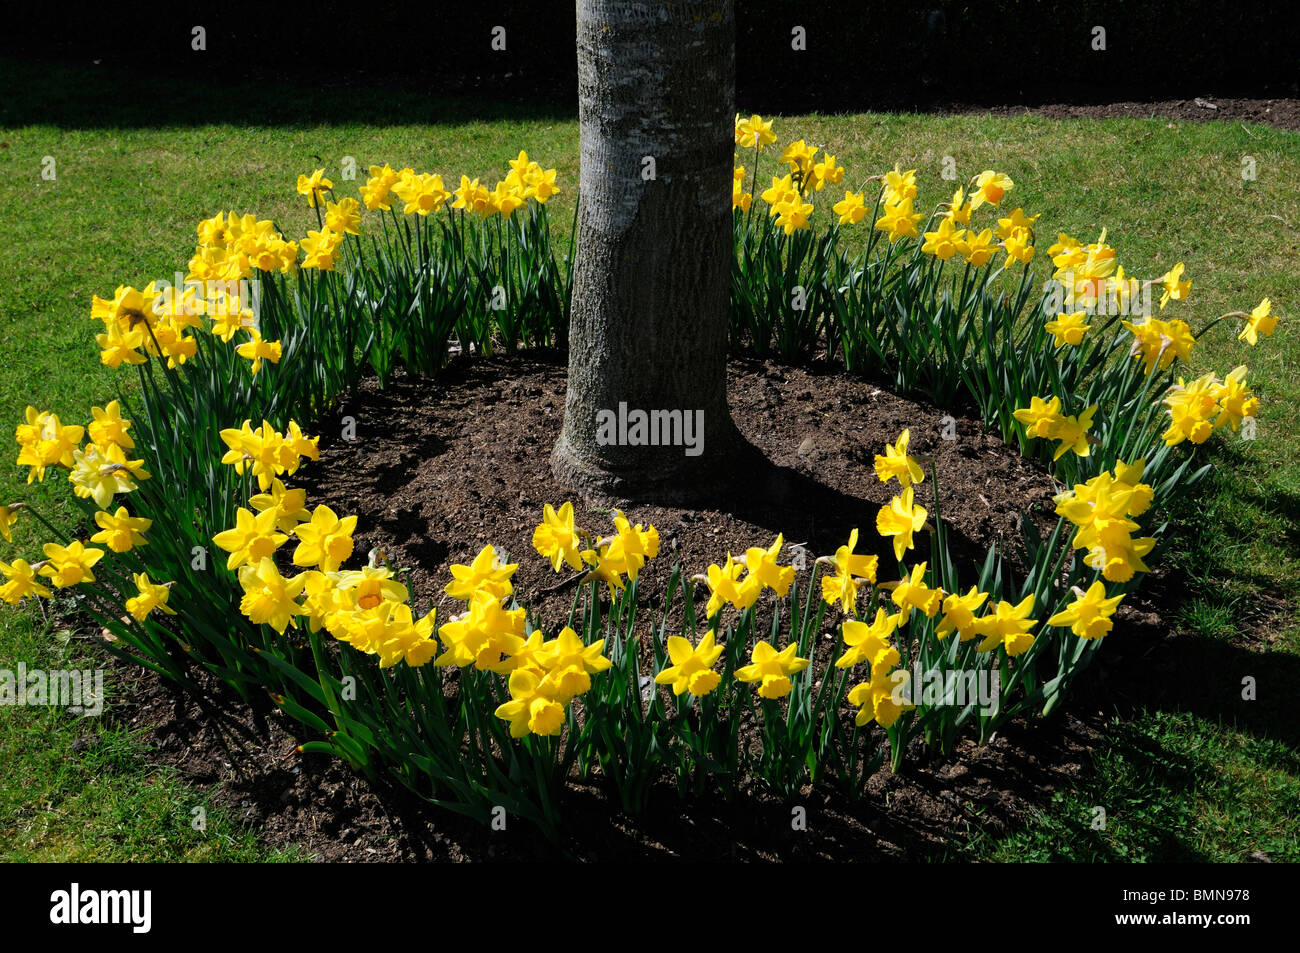 schließt sich der Kreis Ring von Narzissen, die Surround-Umgebung umgeben umschließen an der Basis der eine Baumstamm Frühling Blüte Blüte Blume Stockfoto